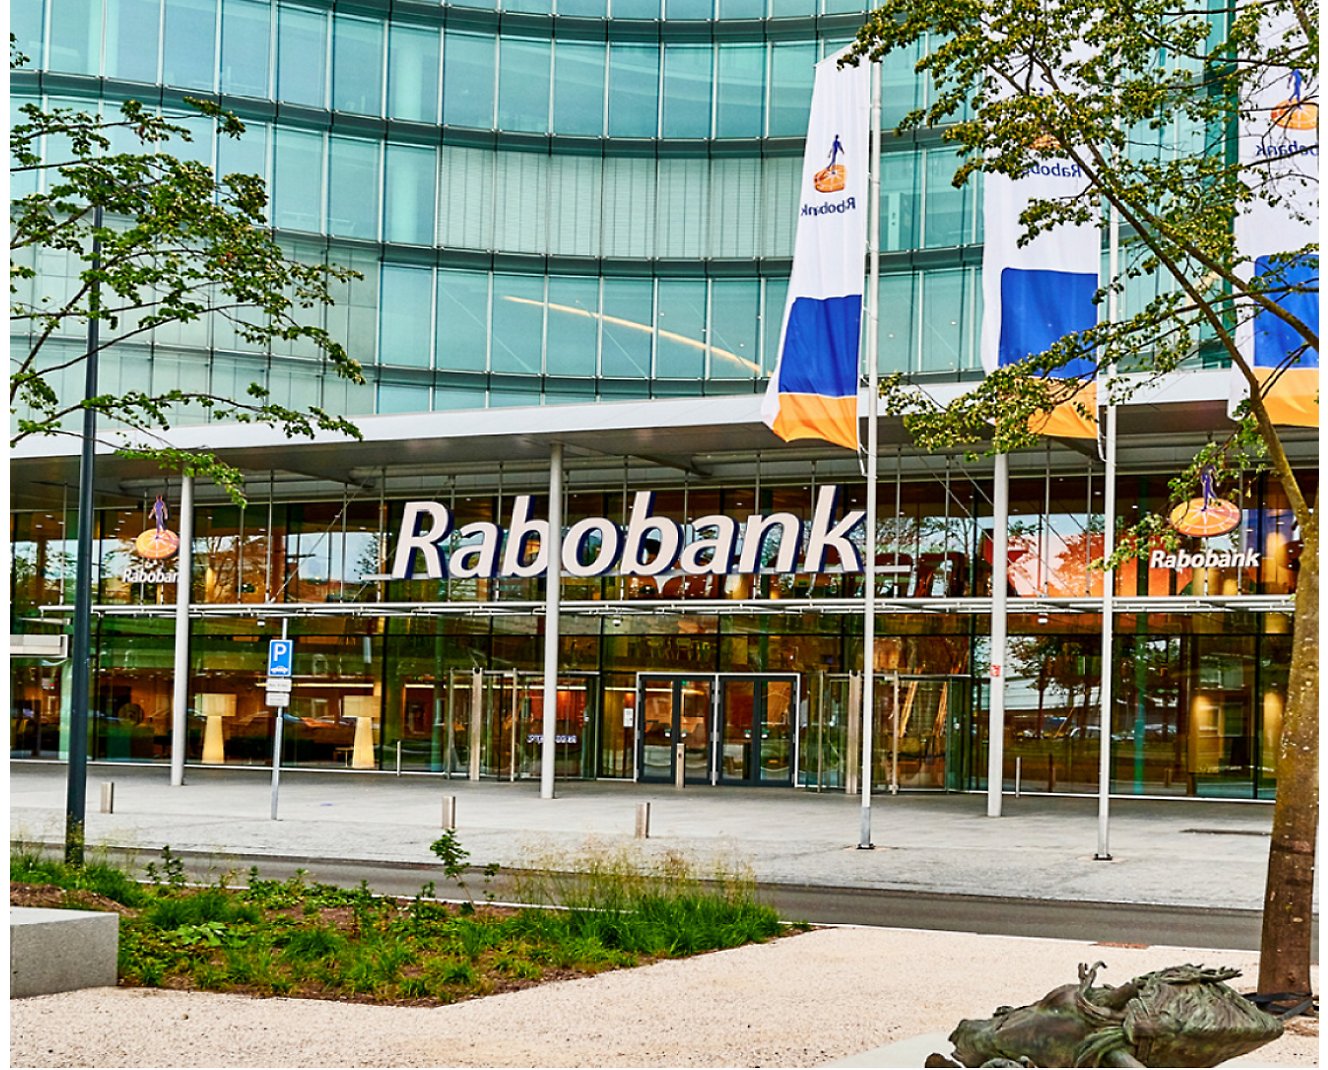 Een gebouw met een bord met de tekst 'Rabobank'.